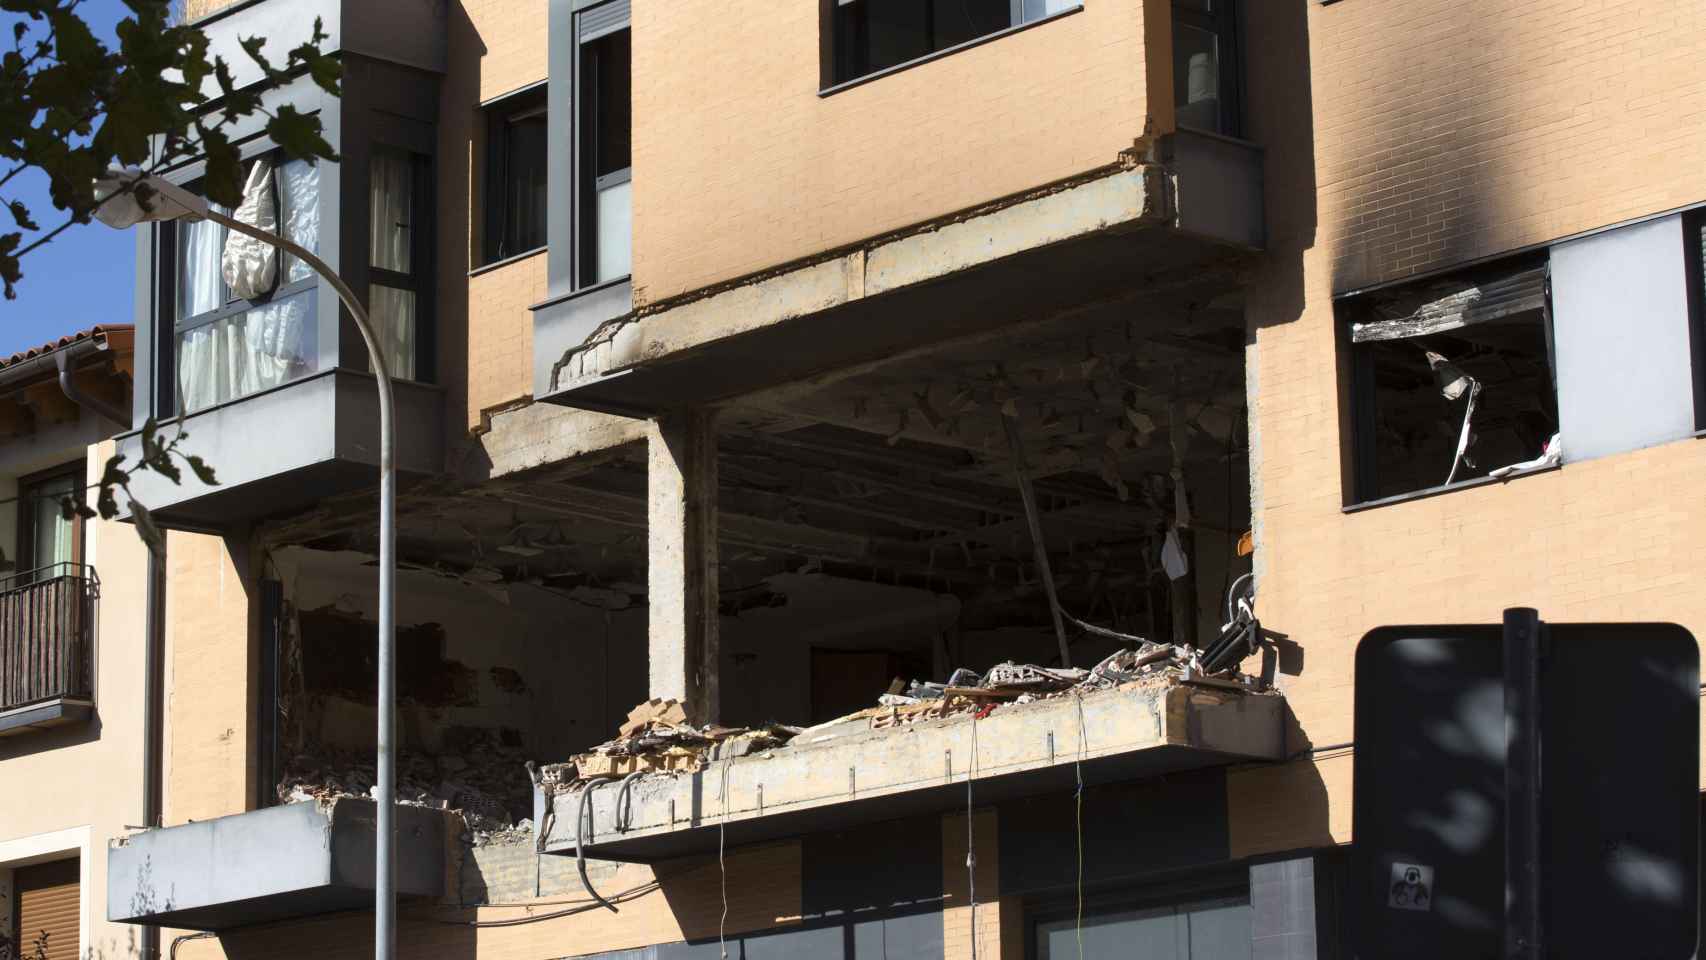 Vivienda afectada por la explosión en Tudela, Navarra. / Villar López/ Efe.